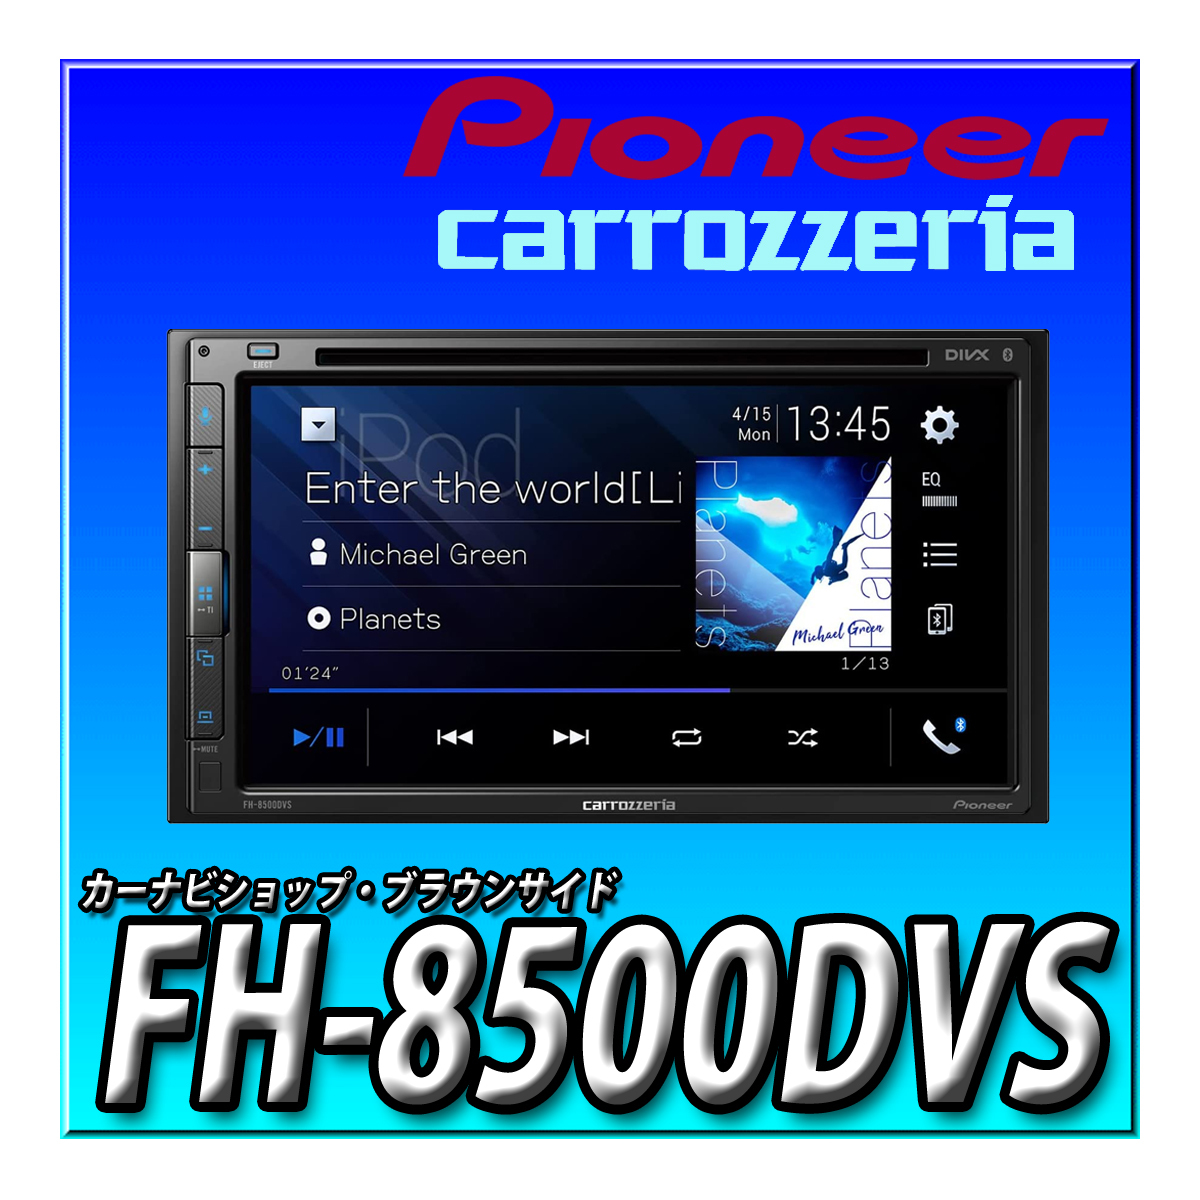 【全品送料無料】 FH-8500DVS 新品未開封 パイオニア カロッツェリア USB Bluetooth CD DVD 6.8V型 送料無料 ディスプレイオーディオ 当日出荷 DVDプレイヤー